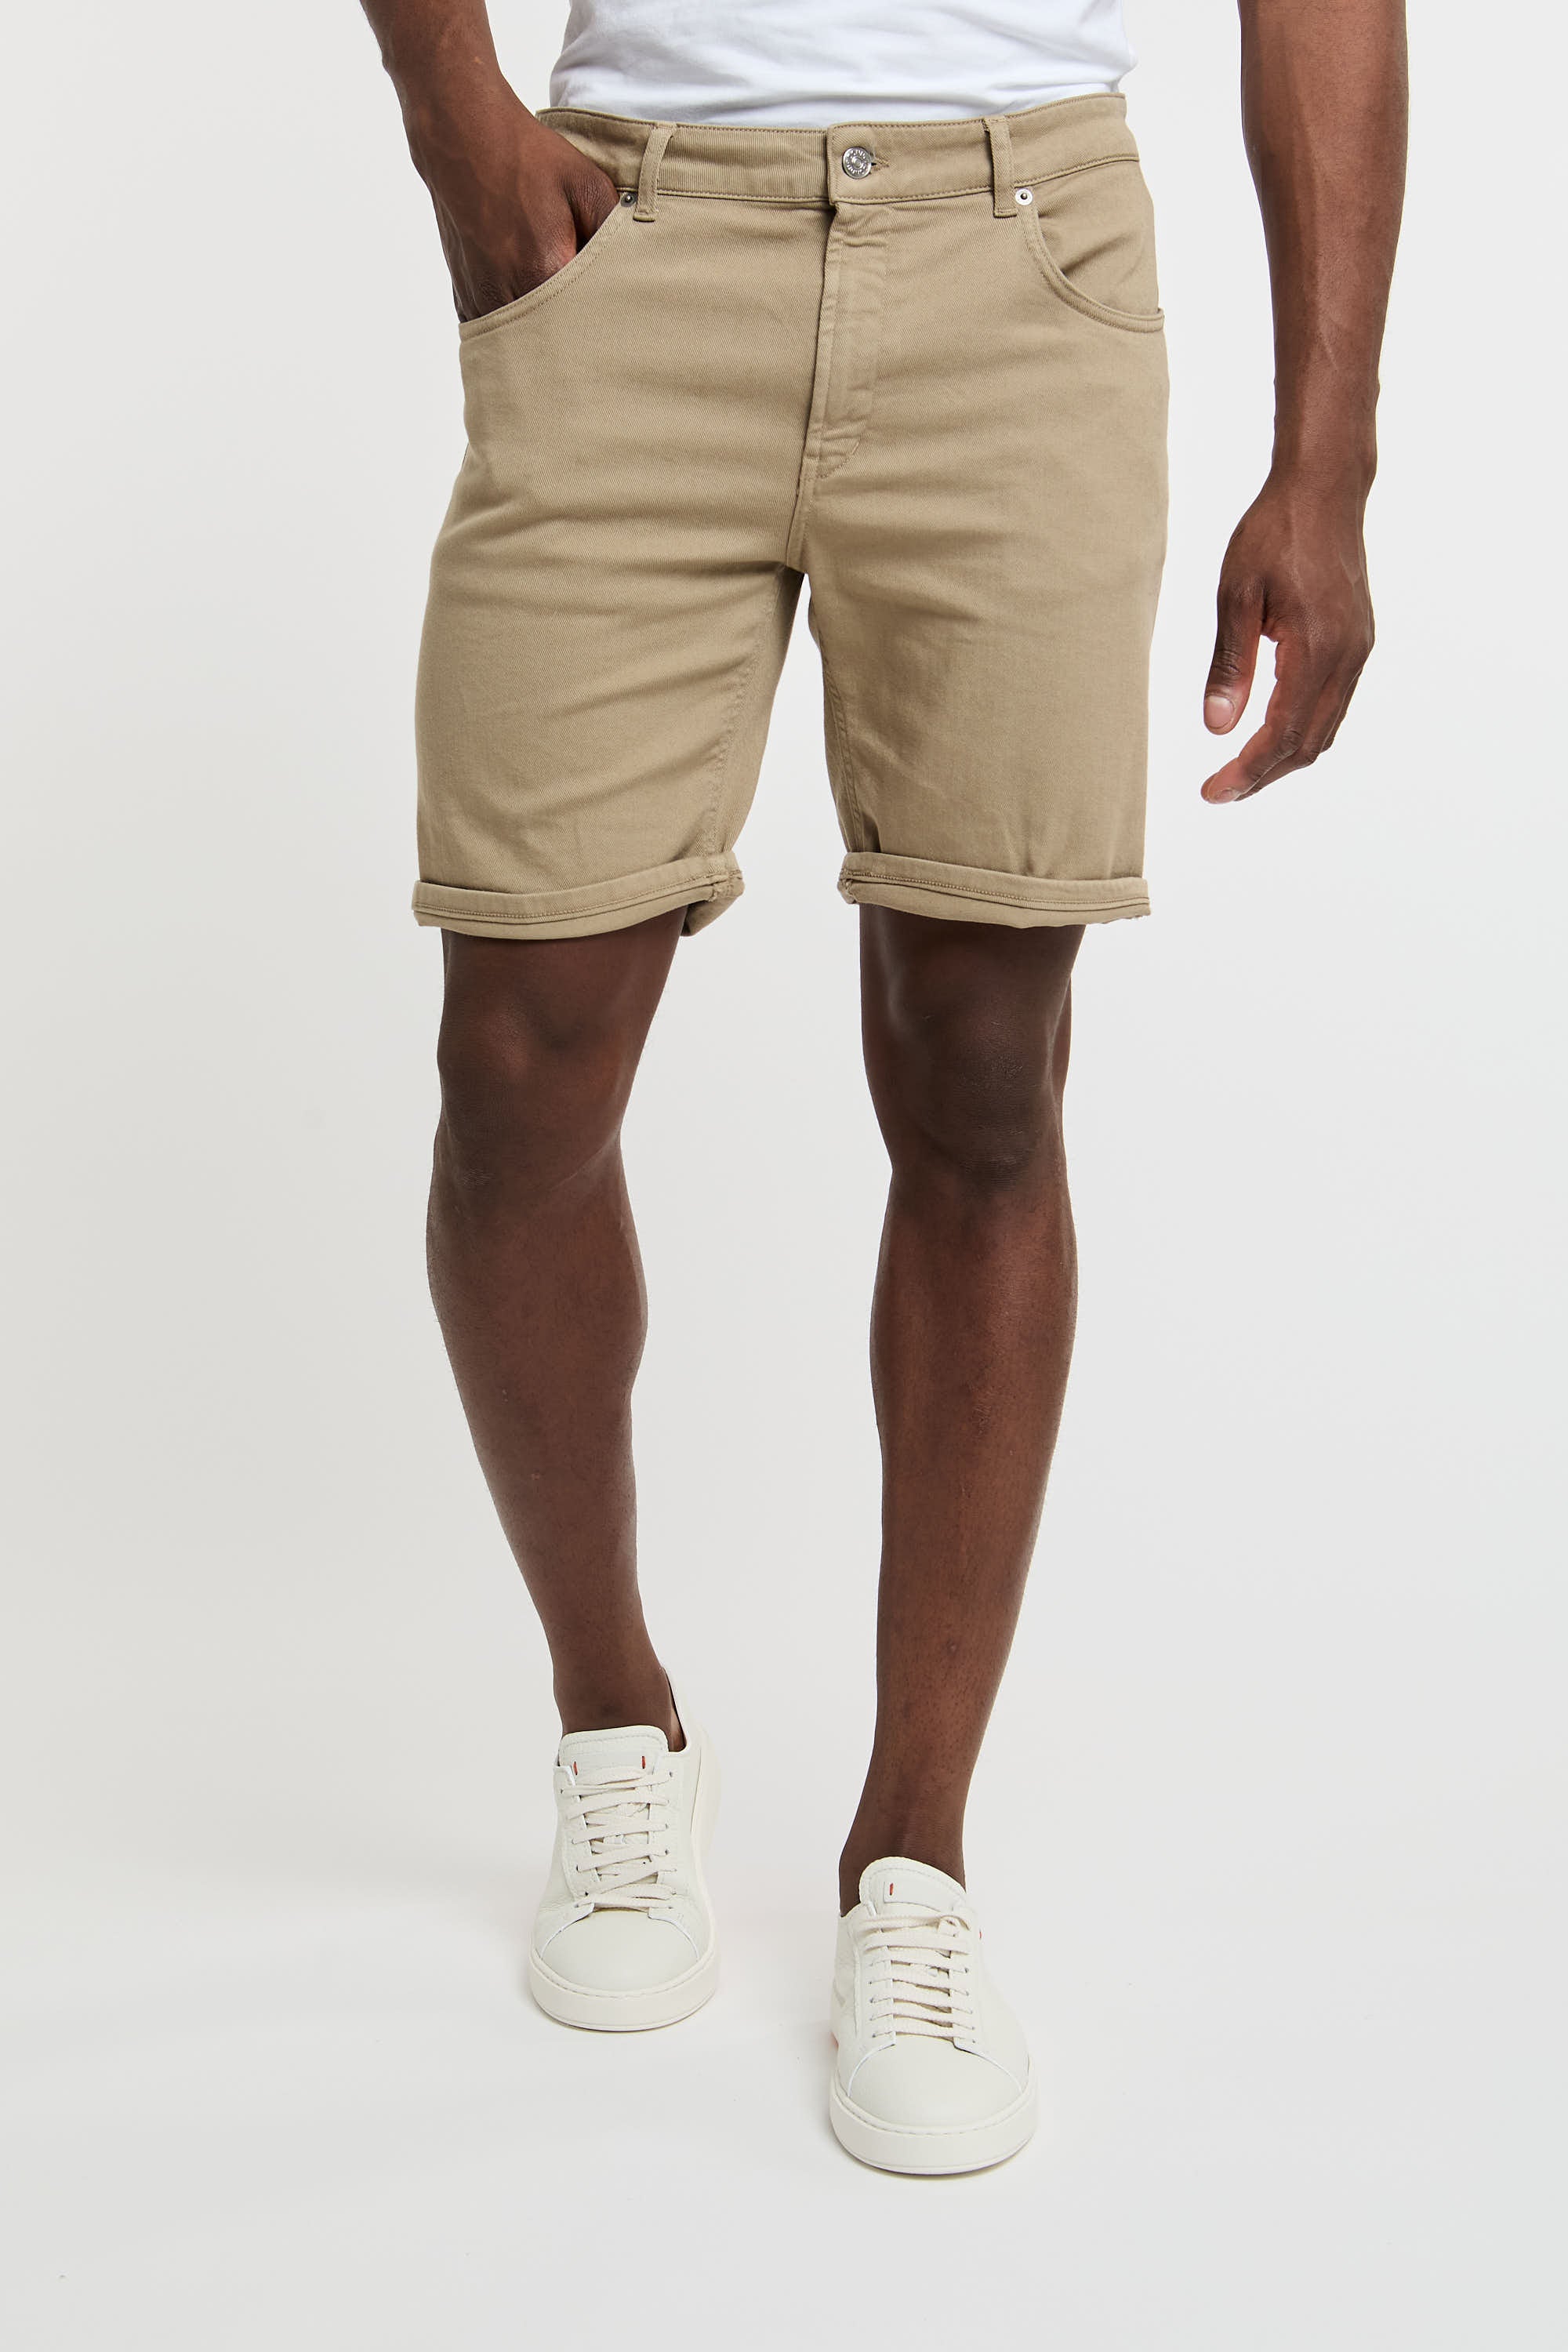 Dondup Derick Beige Cotton Bermuda Shorts-3